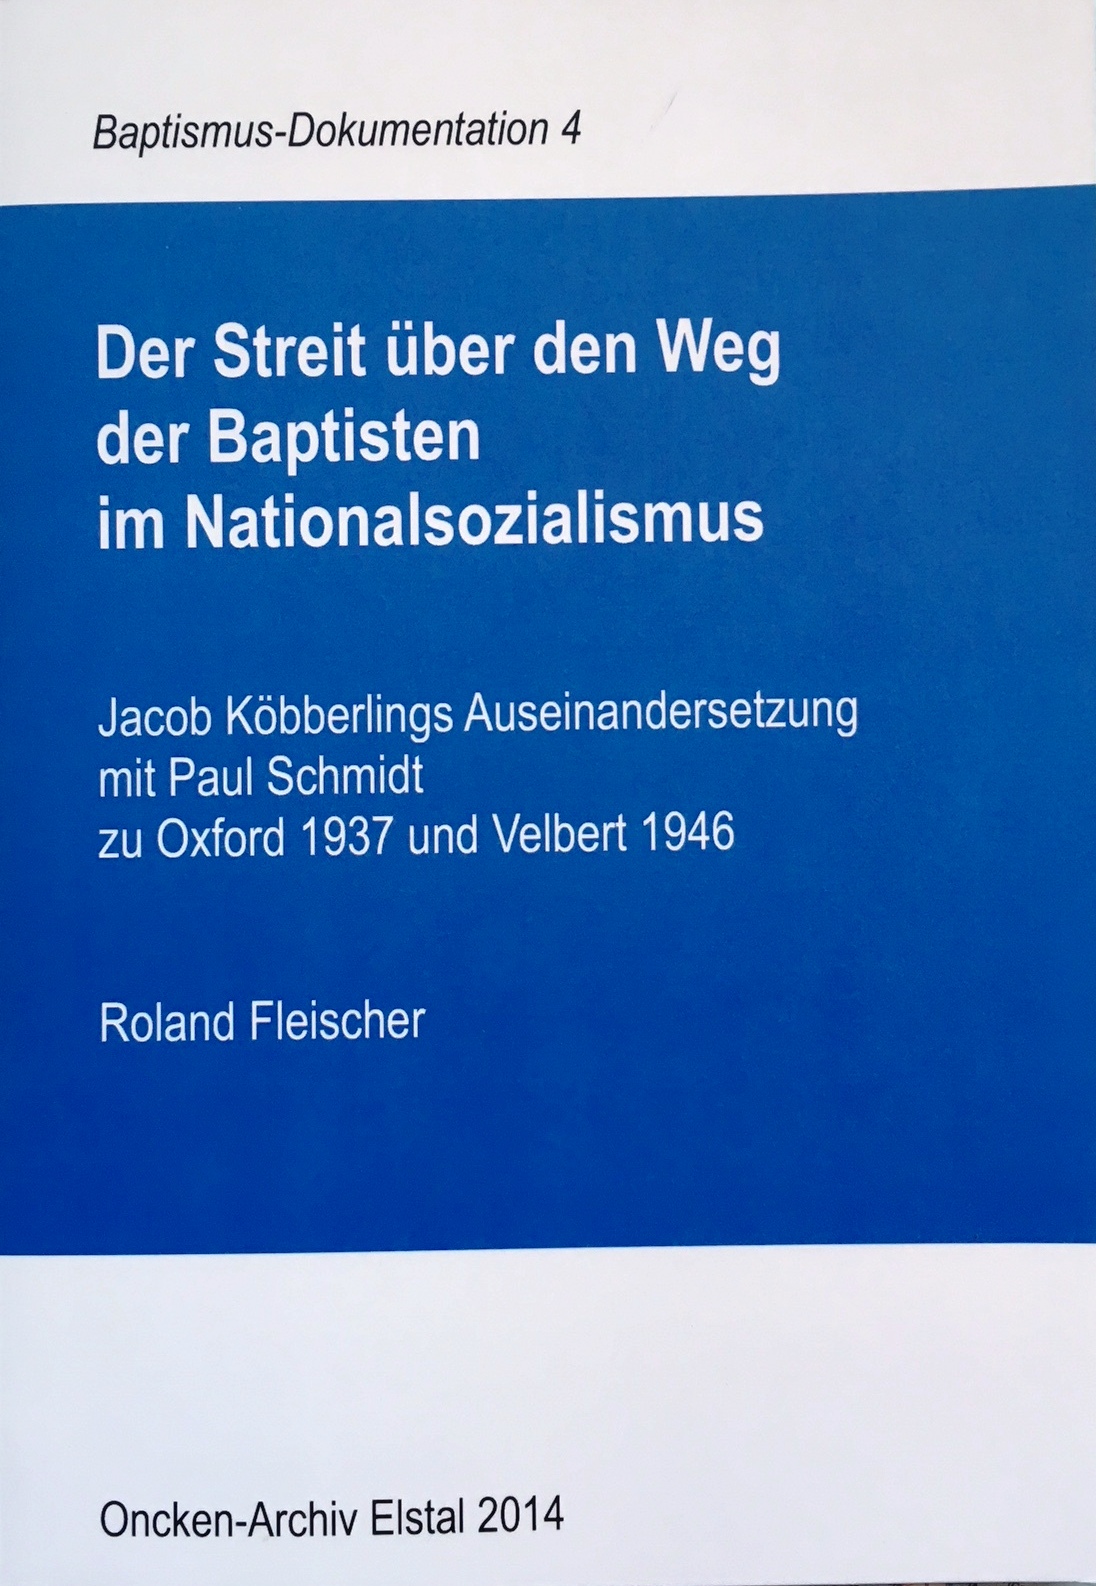 Fleischer, Roland 2014. Der Streit über den Weg der Baptisten im Nationalsozialismus.